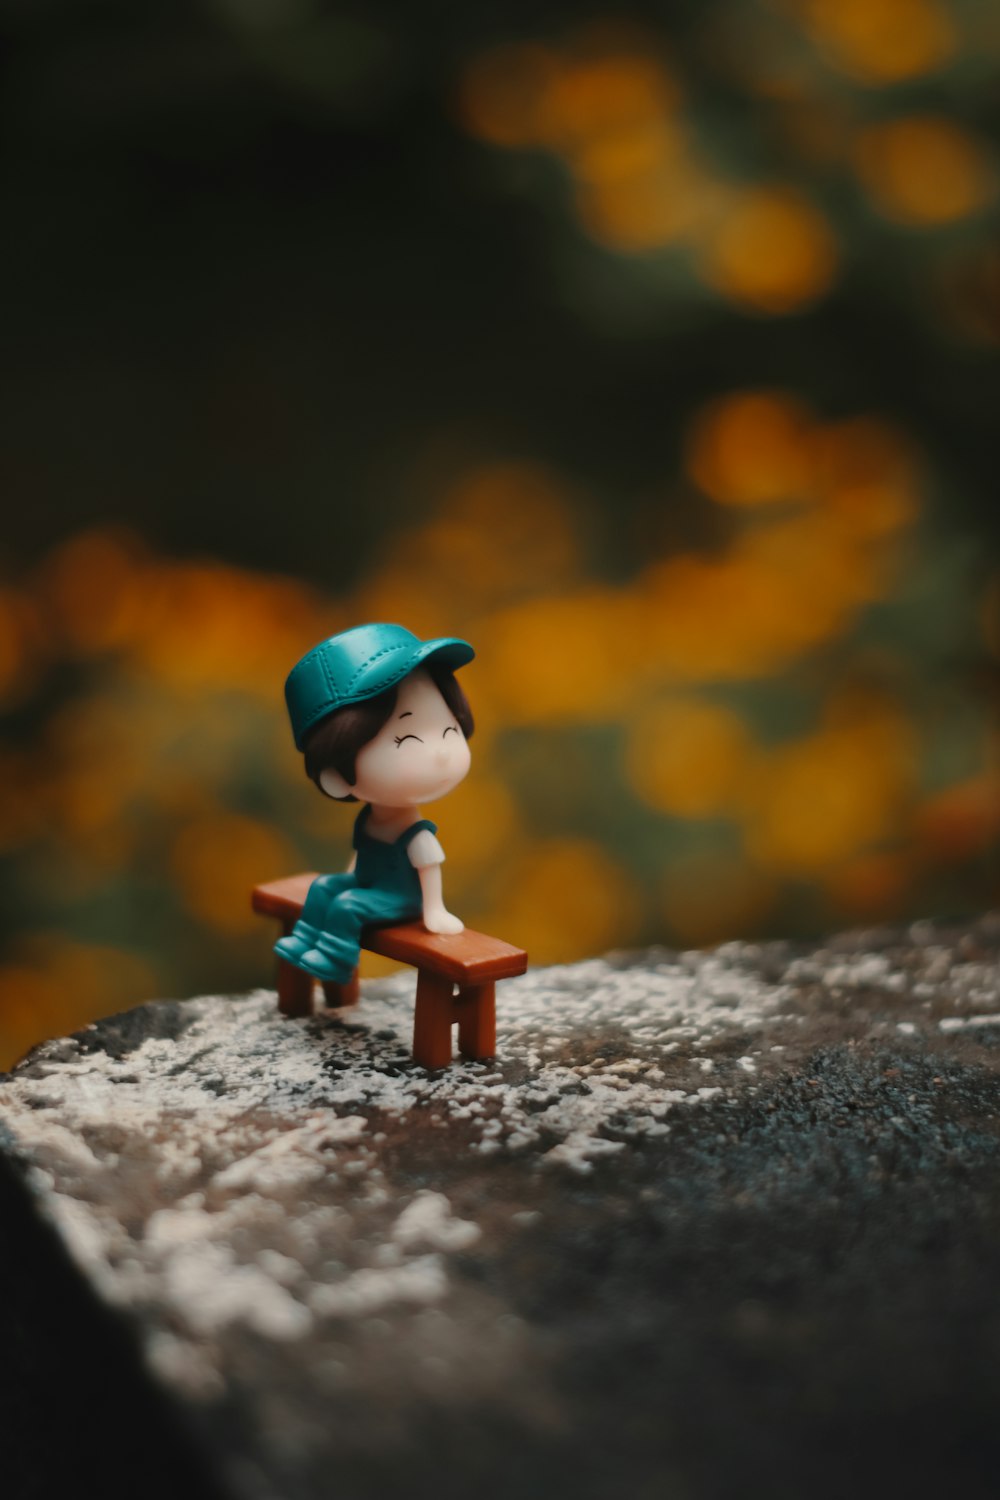 Ein kleines Spielzeug sitzt auf einer Holzbank